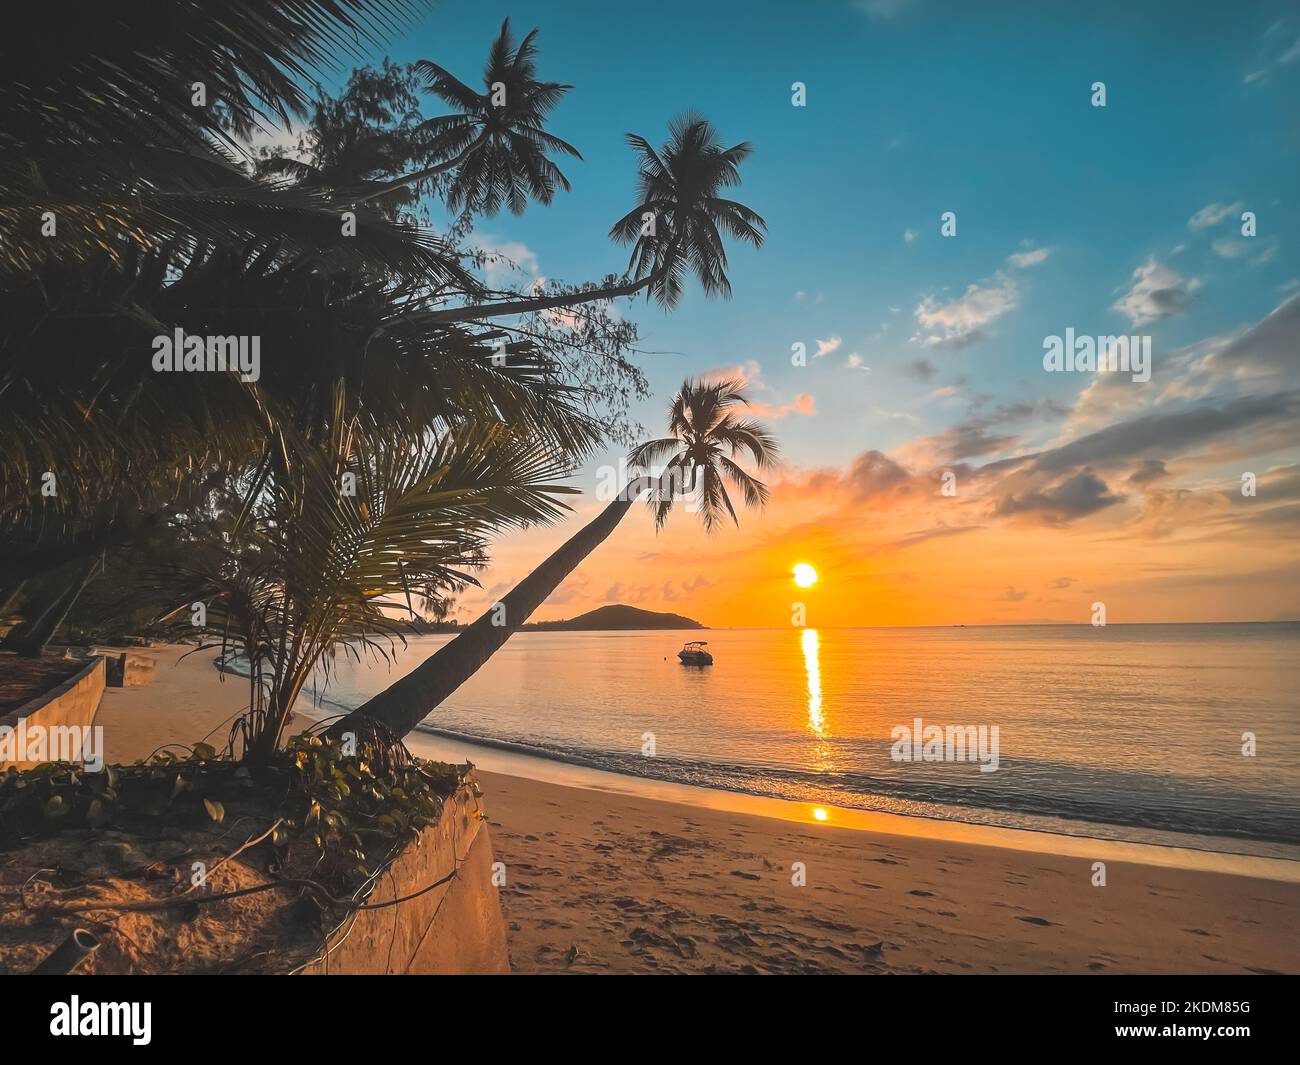 Goldene tropische Insel Sonnenuntergangslandschaft, Palmen Silhouette vor hellen bunten Himmel. Sandstrand mit Kokosnussbaumbästen und orangefarbenem Sonnenaufgangshimmel über dem Meer. Reisen, Urlaub, Urlaub, Entspannung Stockfoto